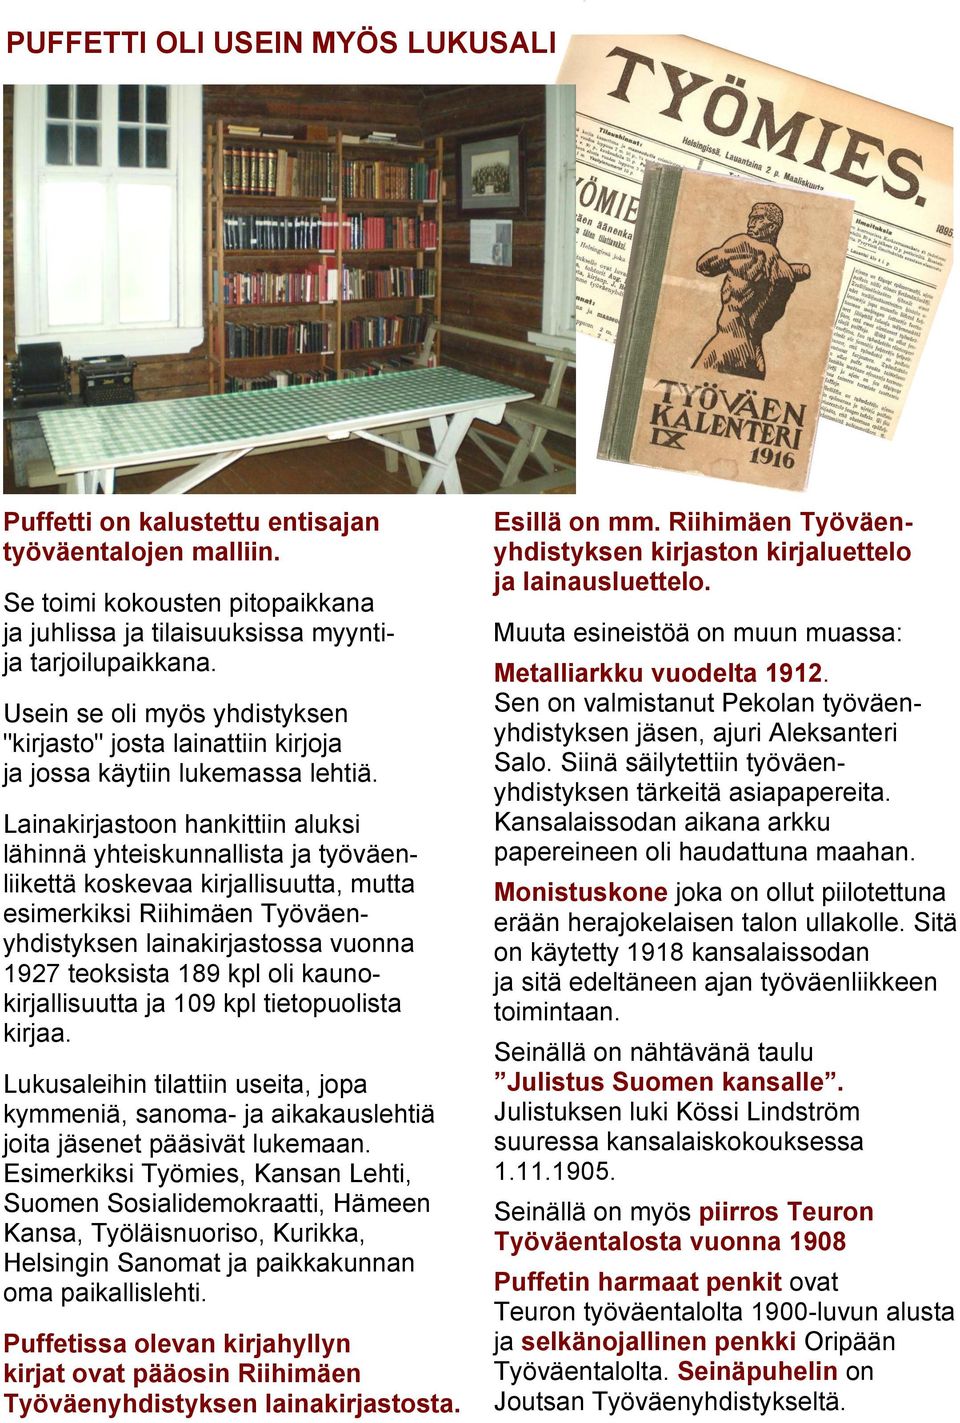 Lainakirjastoon hankittiin aluksi lähinnä yhteiskunnallista ja työväenliikettä koskevaa kirjallisuutta, mutta esimerkiksi Riihimäen Työväenyhdistyksen lainakirjastossa vuonna 1927 teoksista 189 kpl